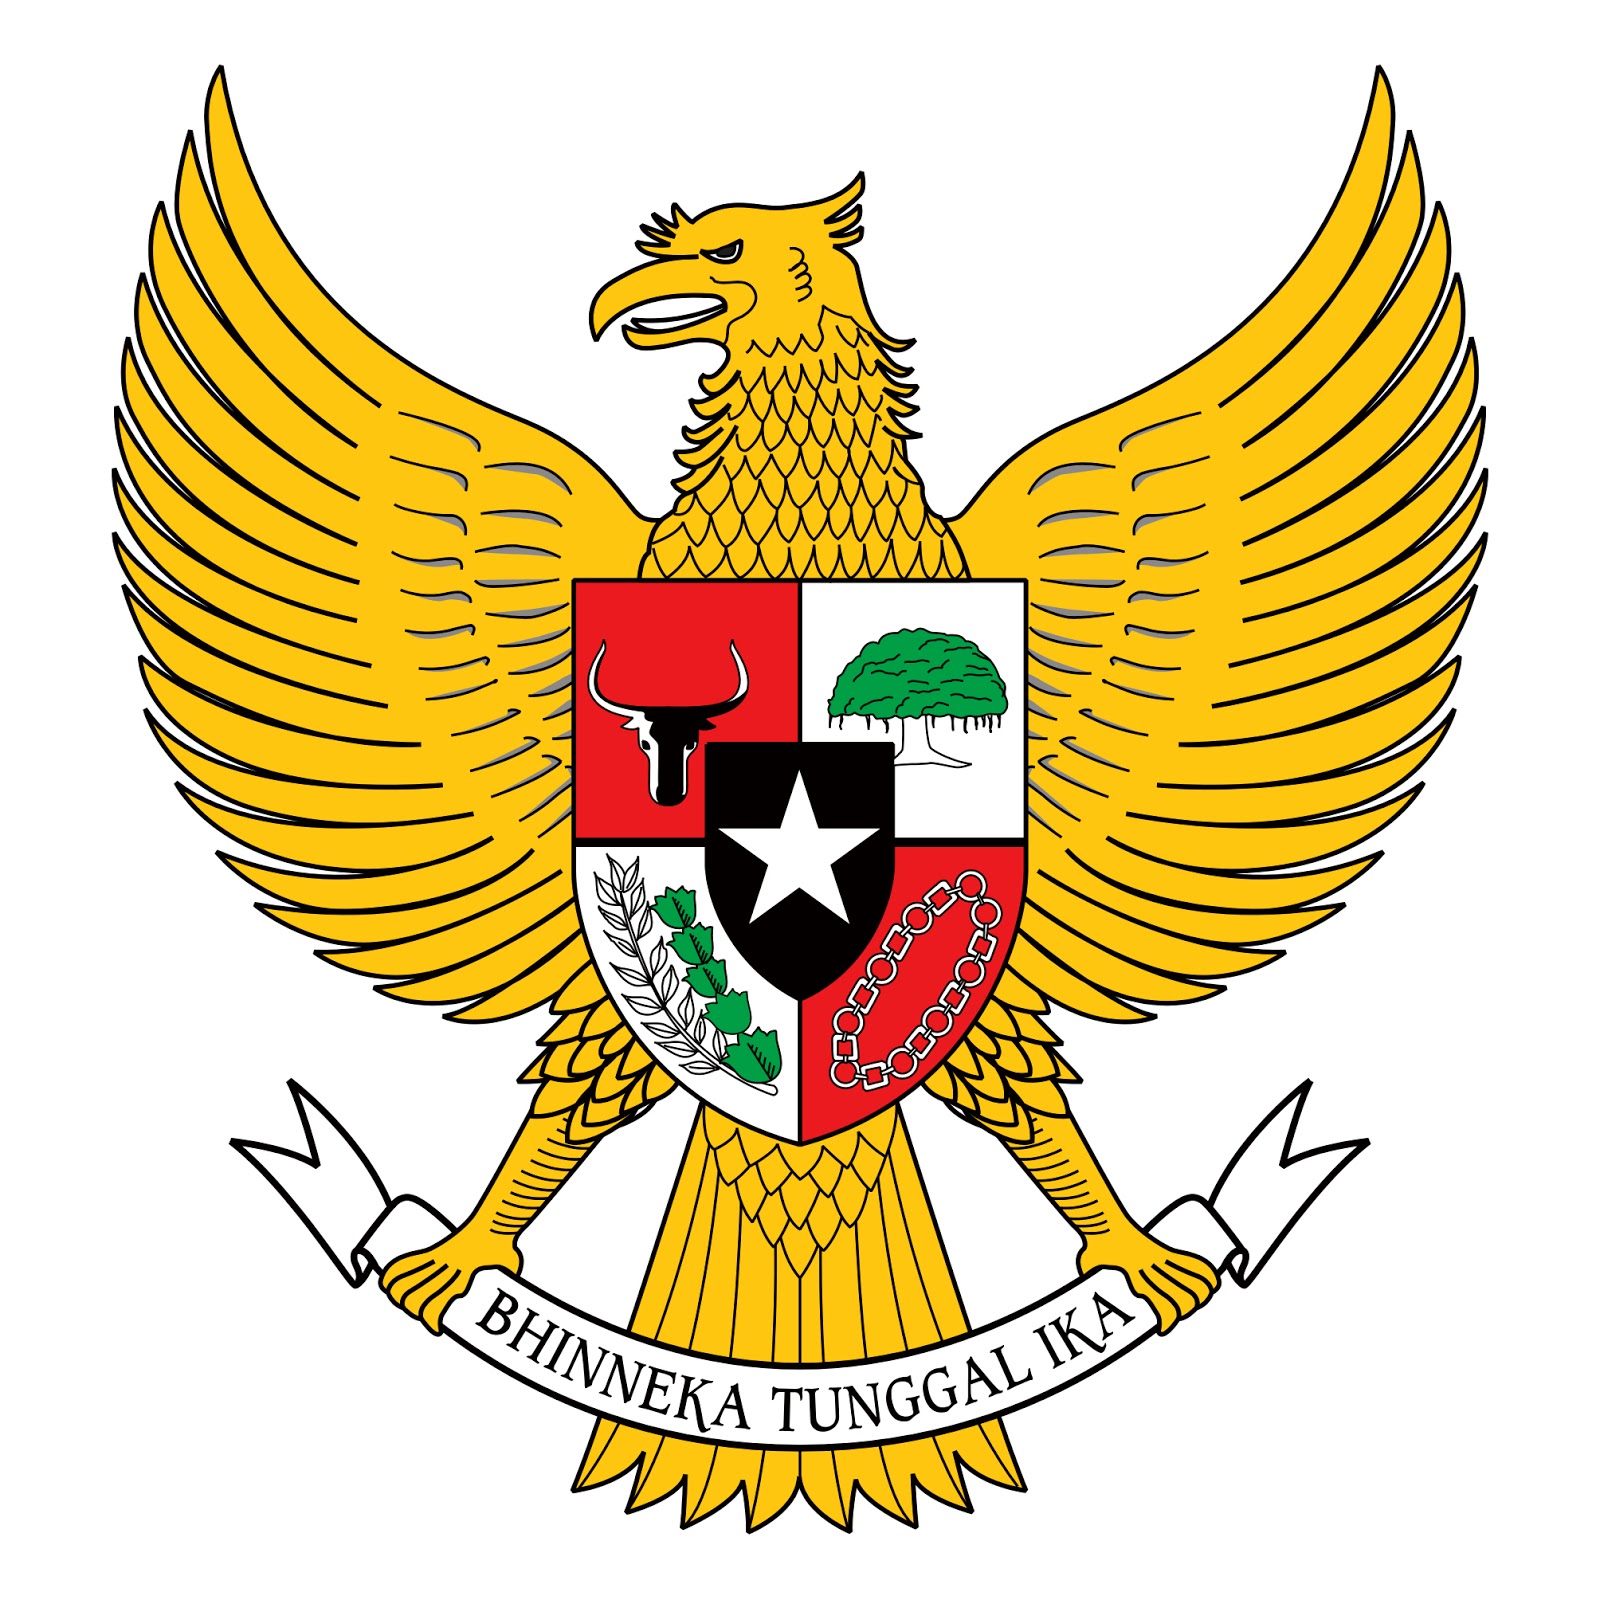 Download Logo Garuda Pancasila Vector CDR - GUDANG LOGO